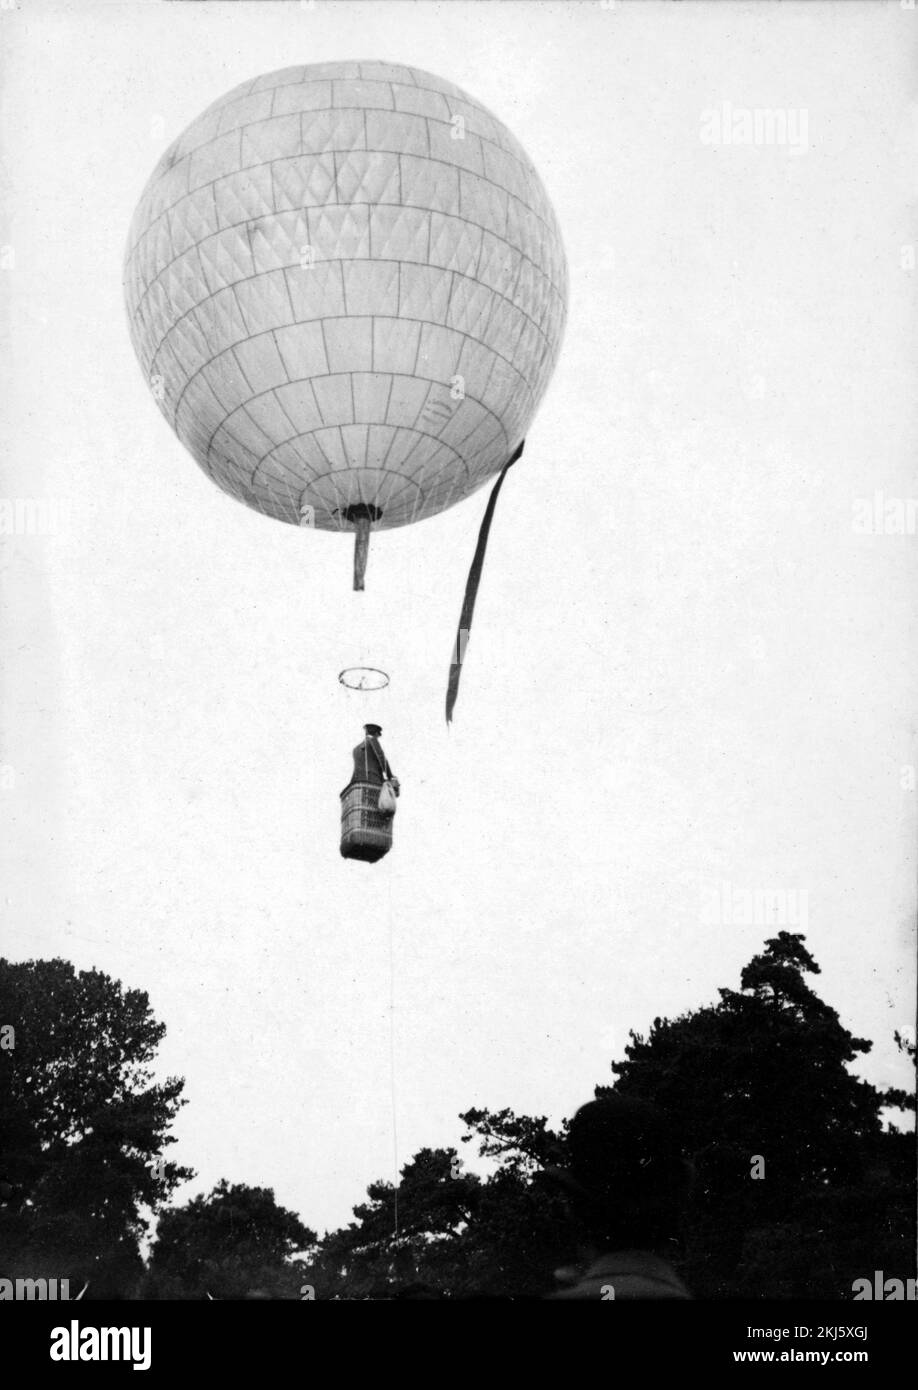 Premier ballon de Santos-Dumont, 1898, Alberto Santos-Dumont (1873 - 1932), inventeur de l'aéronautique brésilienne Banque D'Images